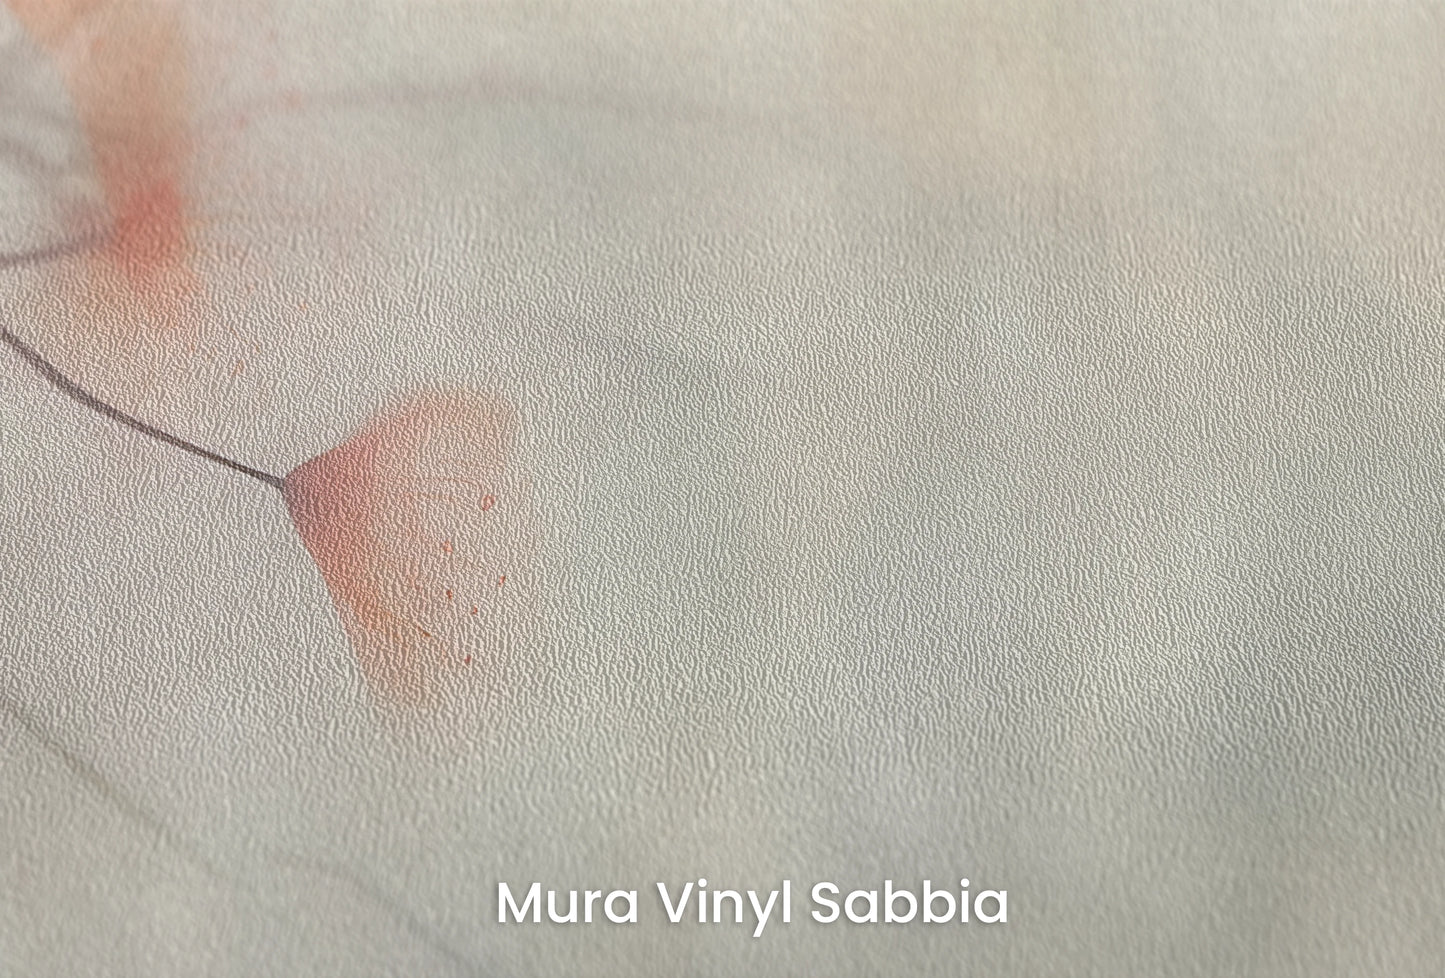 Zbliżenie na artystyczną fototapetę o nazwie Serene Heron na podłożu Mura Vinyl Sabbia struktura grubego ziarna piasku.